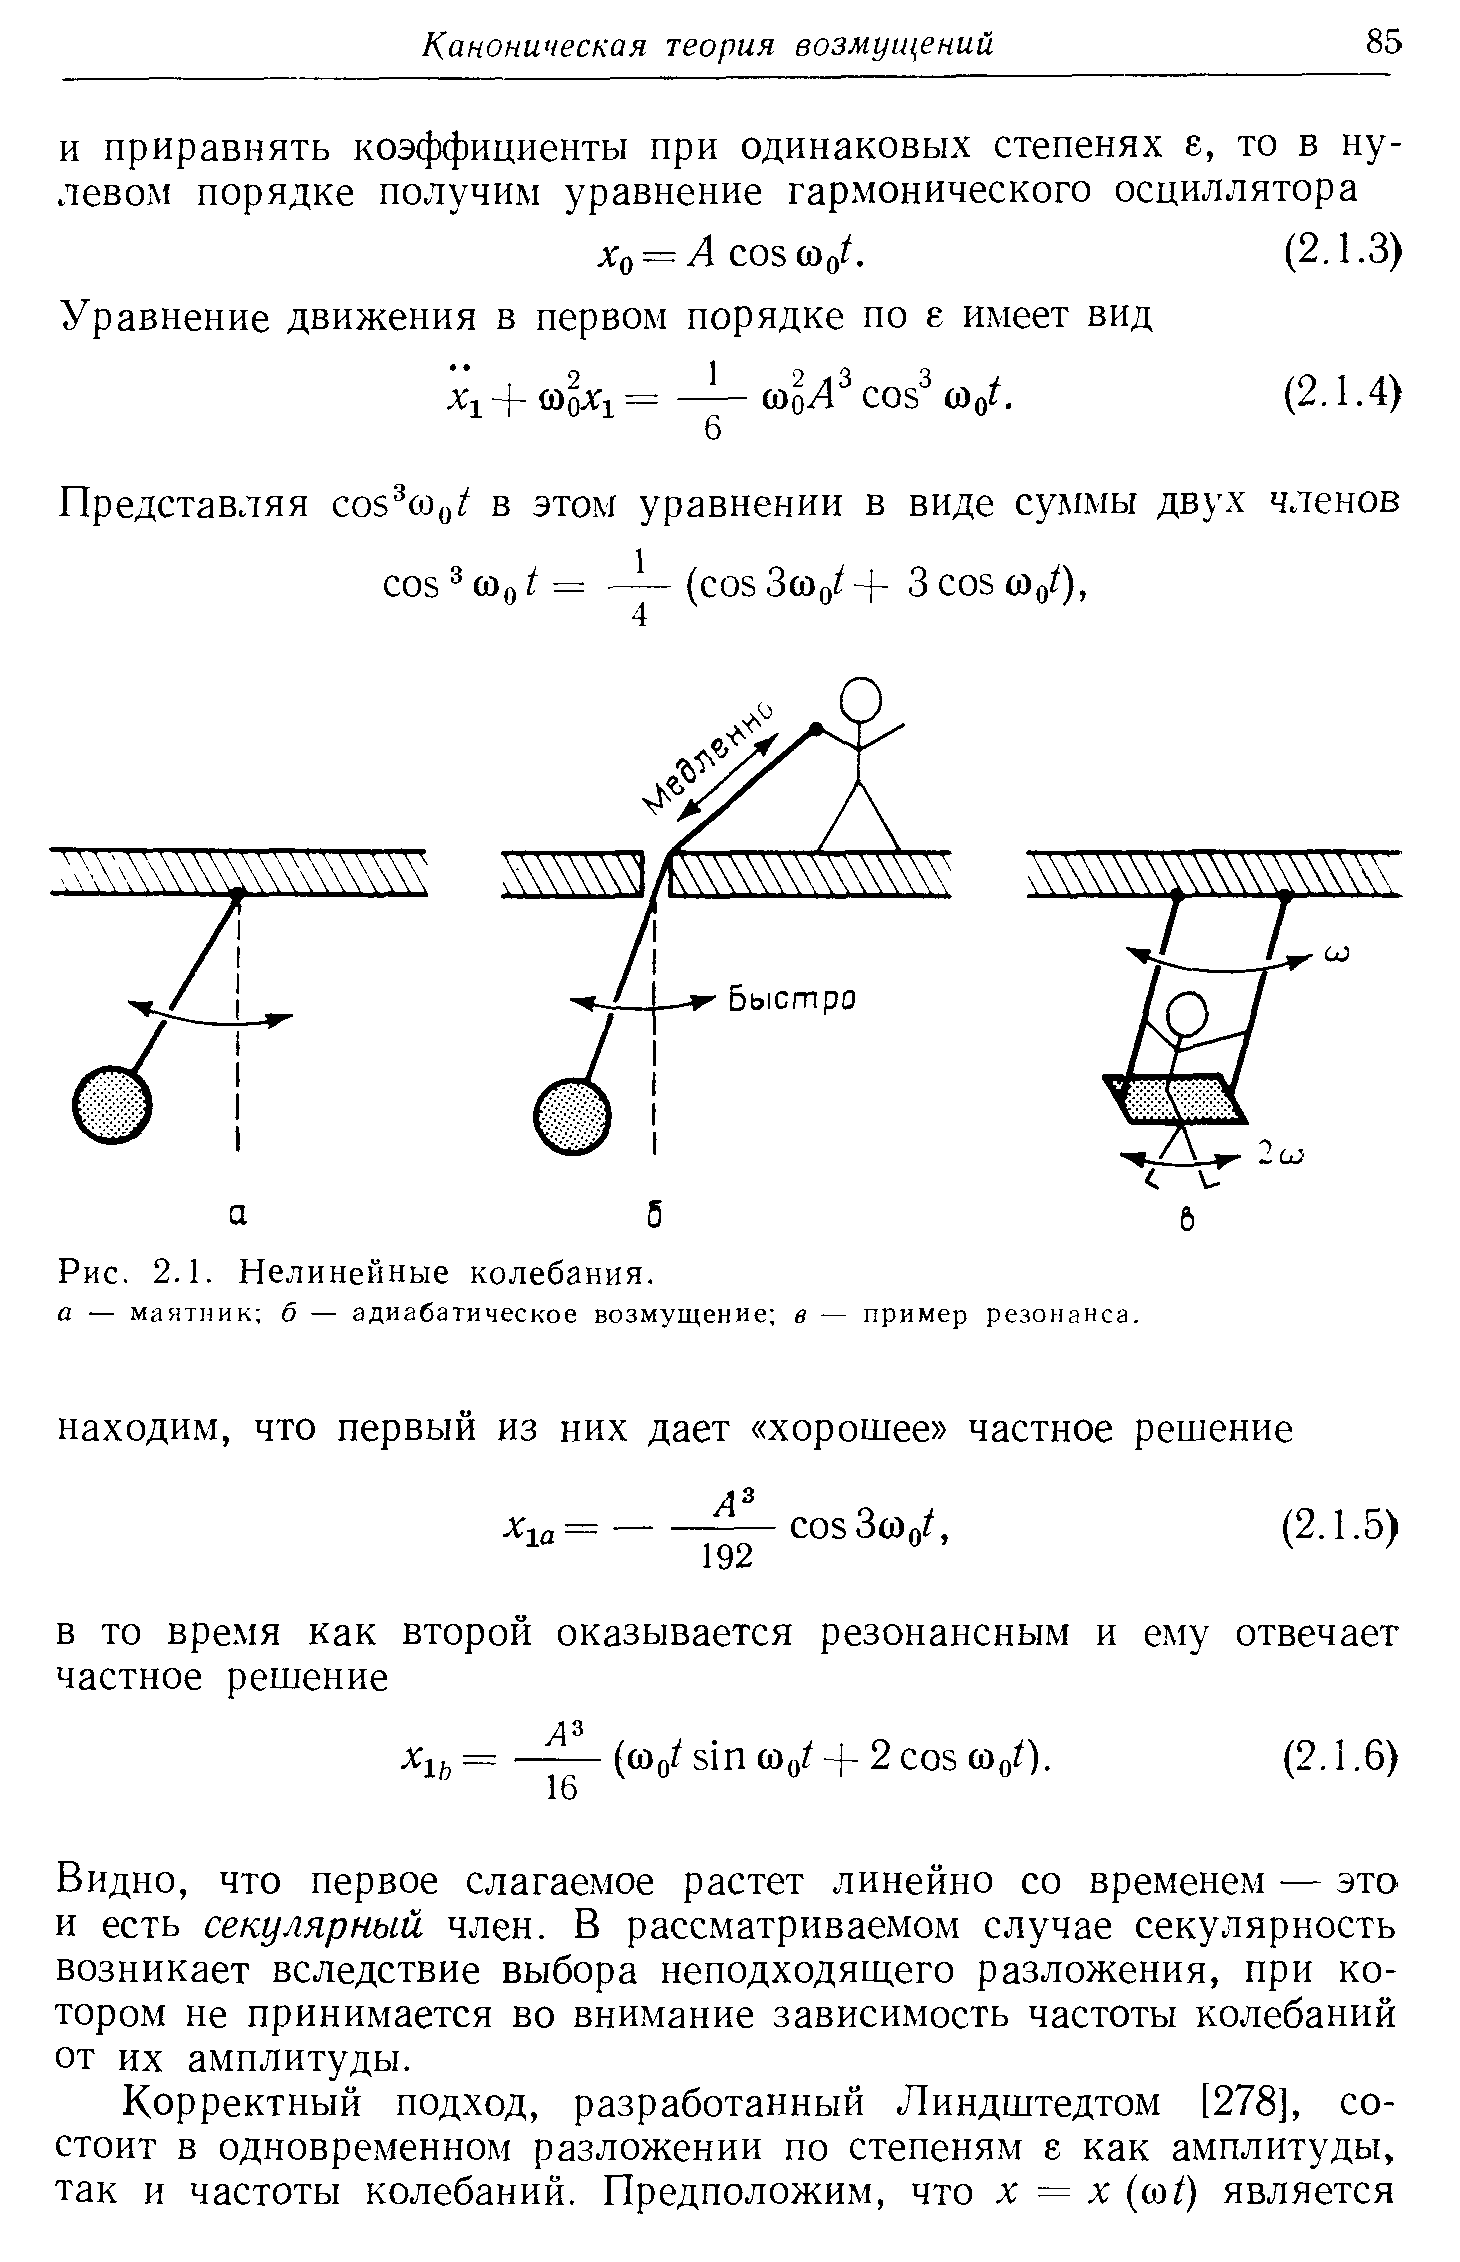 Представляя соб сОц/ в этом уравнении в виде суммы двух членов os 3 (Dq ( os ЗсОо + 3 os (ОоО.
